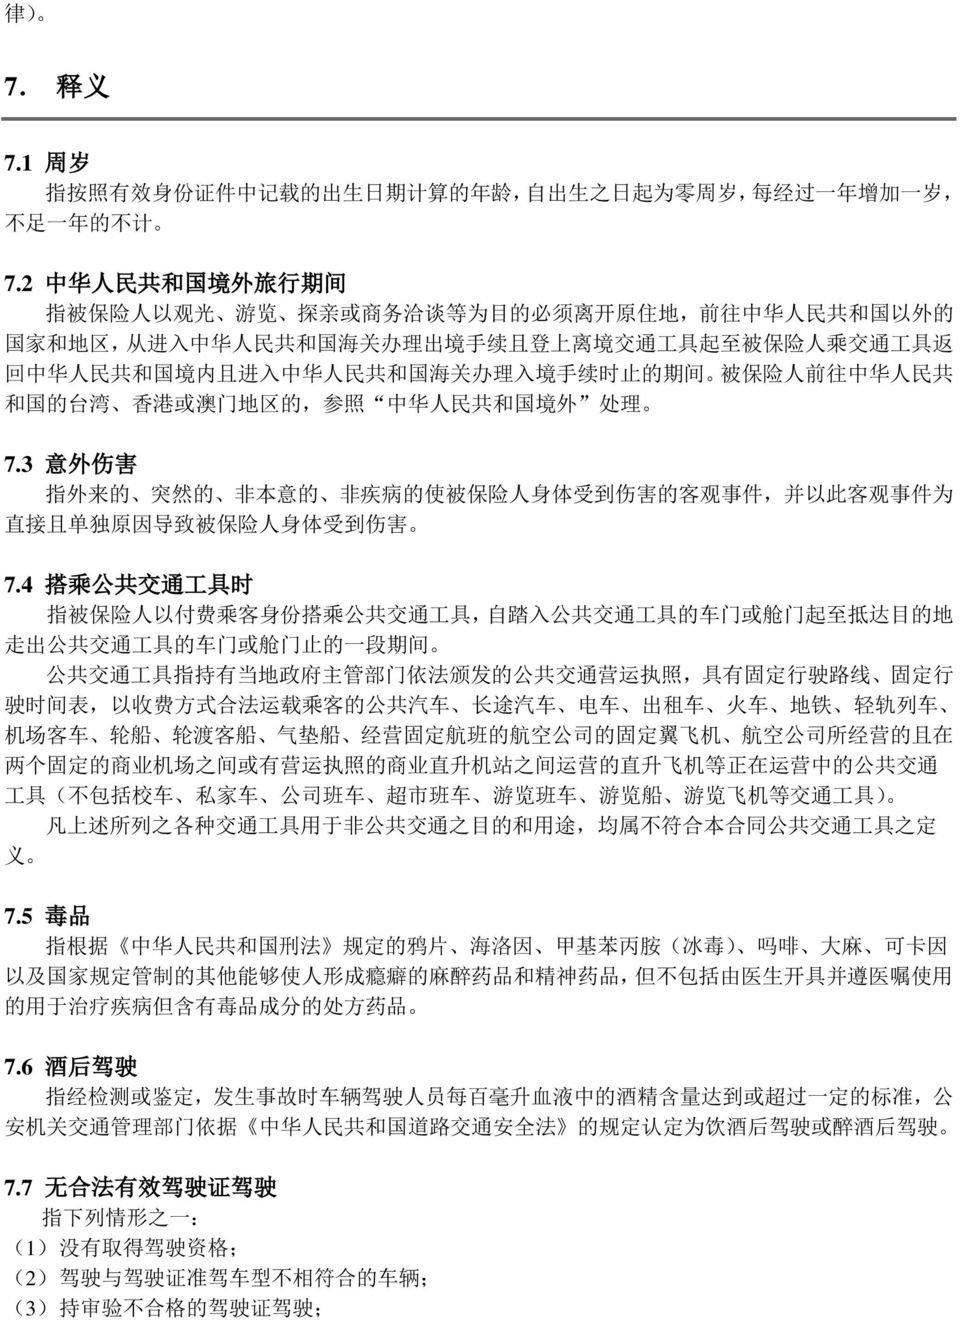 中 华 人 民 共 和 国 境 内 且 进 入 中 华 人 民 共 和 国 海 关 办 理 入 境 手 续 时 止 的 期 间 被 保 险 人 前 往 中 华 人 民 共 和 国 的 台 湾 香 港 或 澳 门 地 区 的, 参 照 中 华 人 民 共 和 国 境 外 处 理 7.